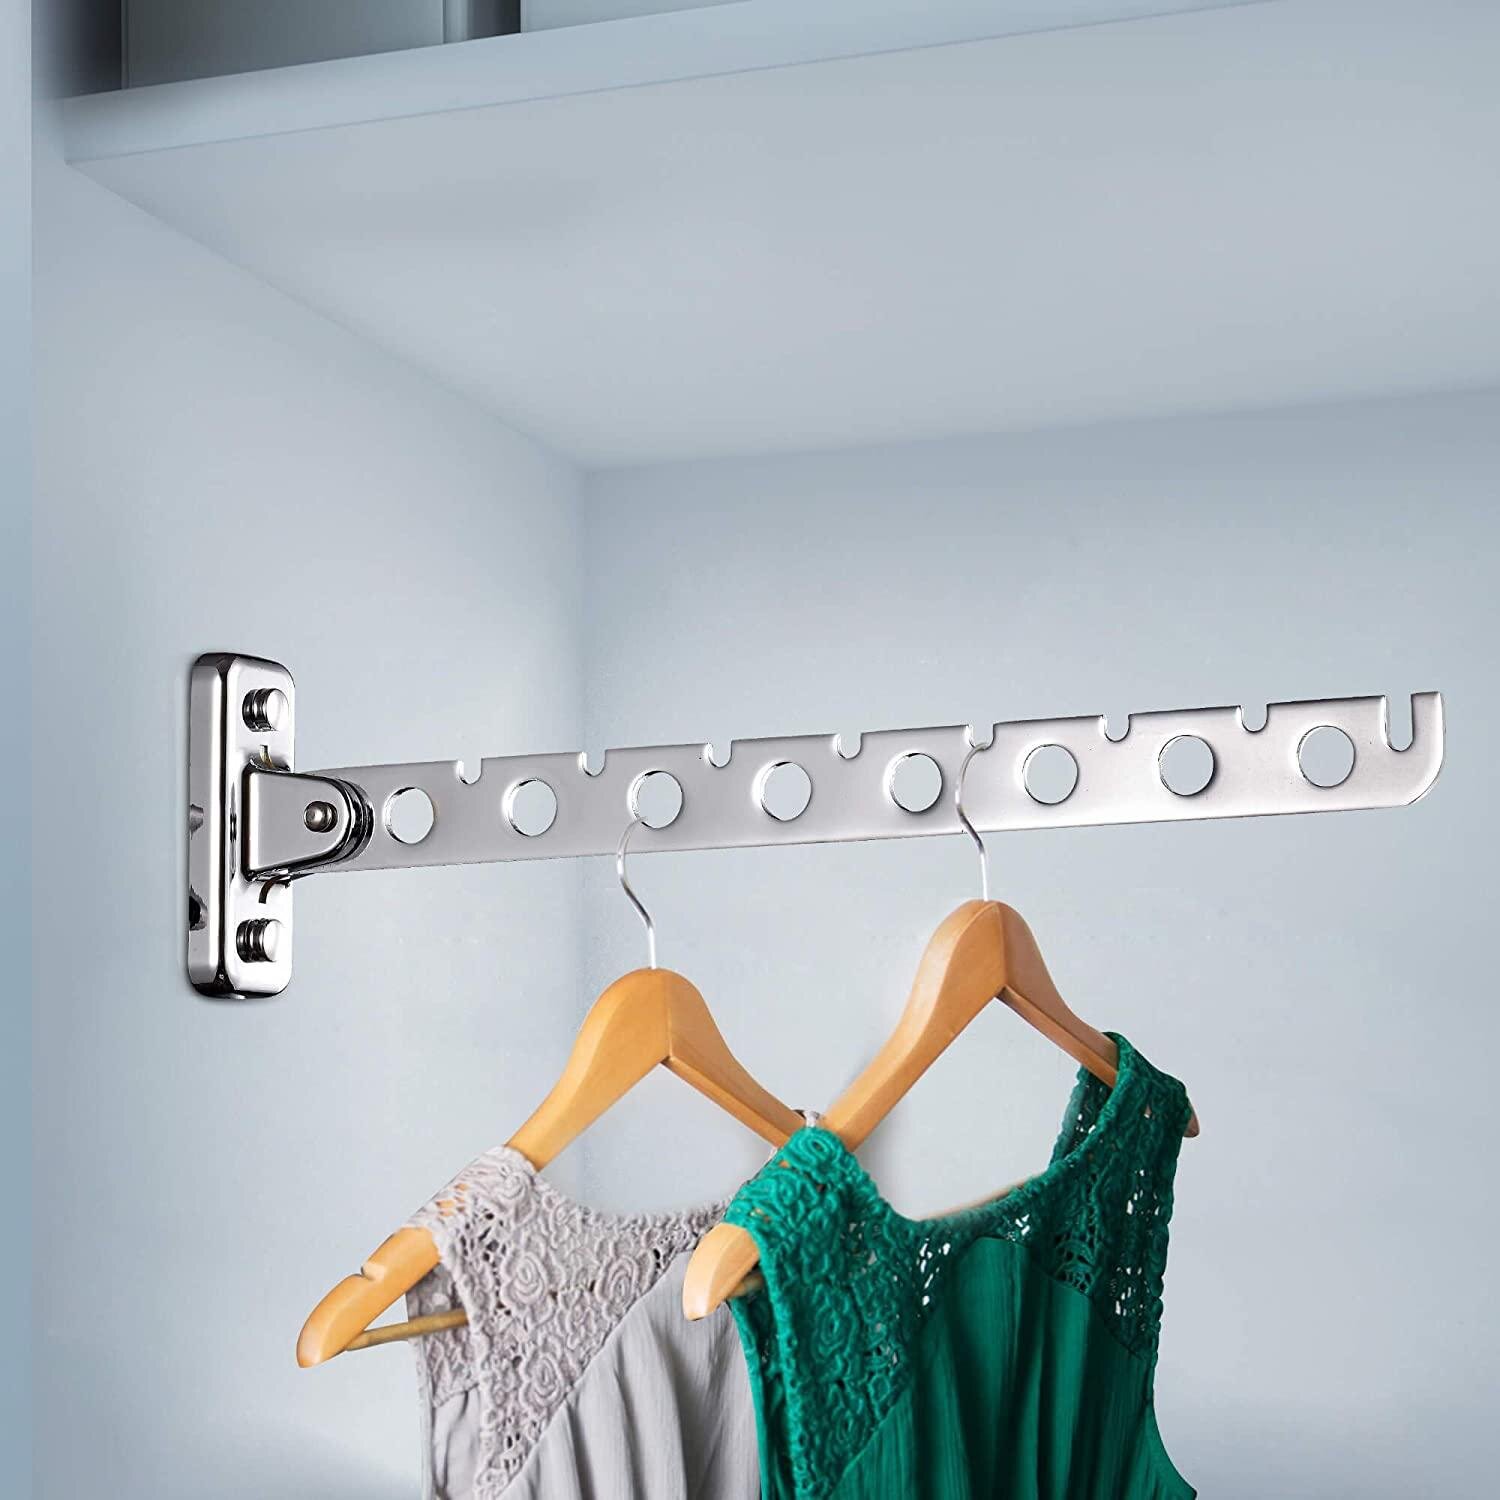 Clothes Tie Rack Hanger 4 Swings Bar Garment Organiser Laundry Storage Holder 